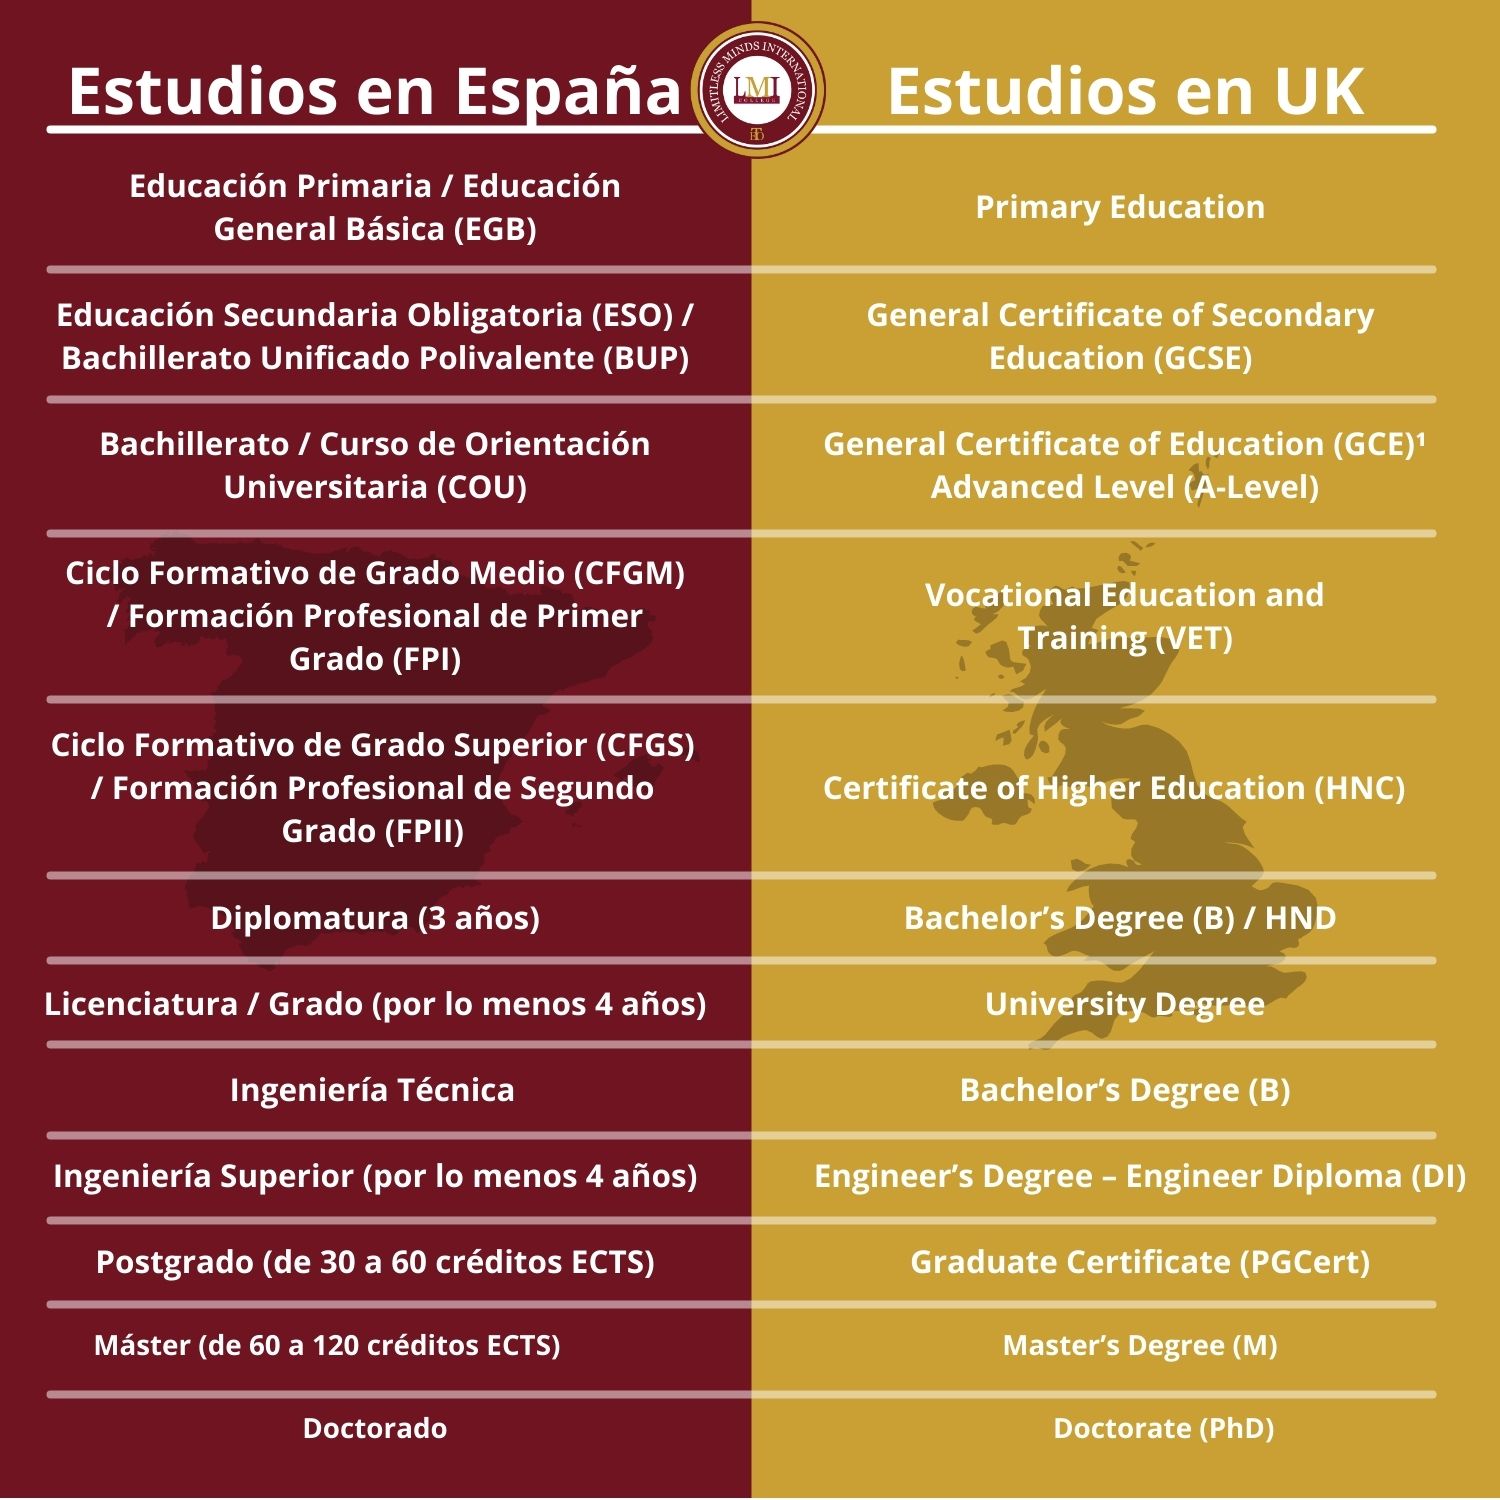 Estudios en España (1)